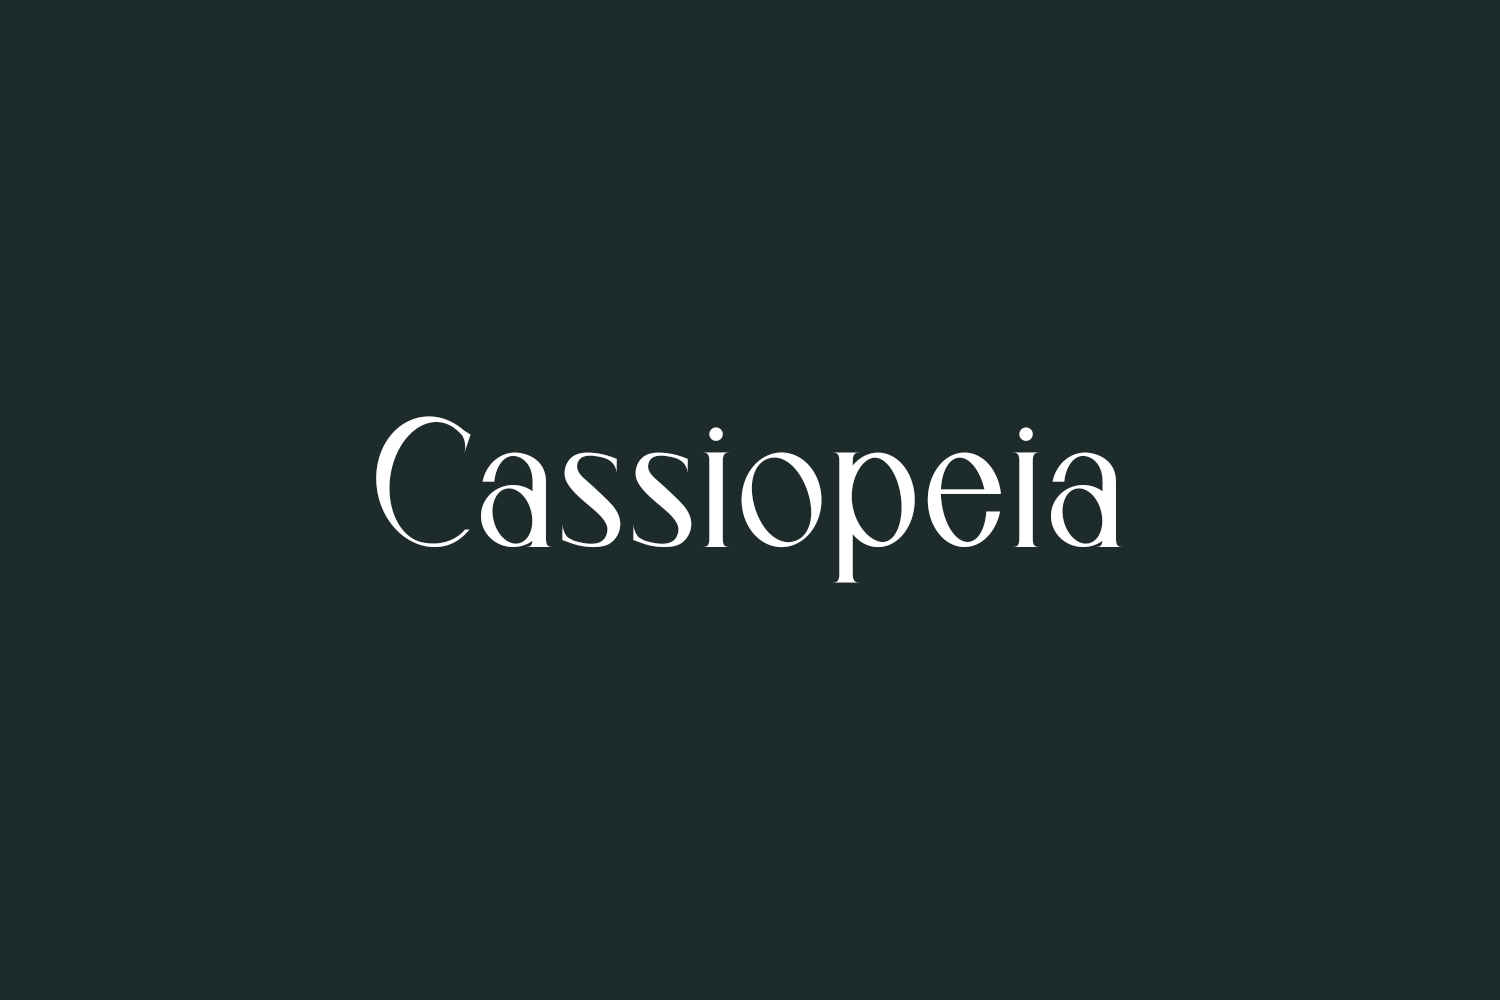 Cassiopeia Free Font